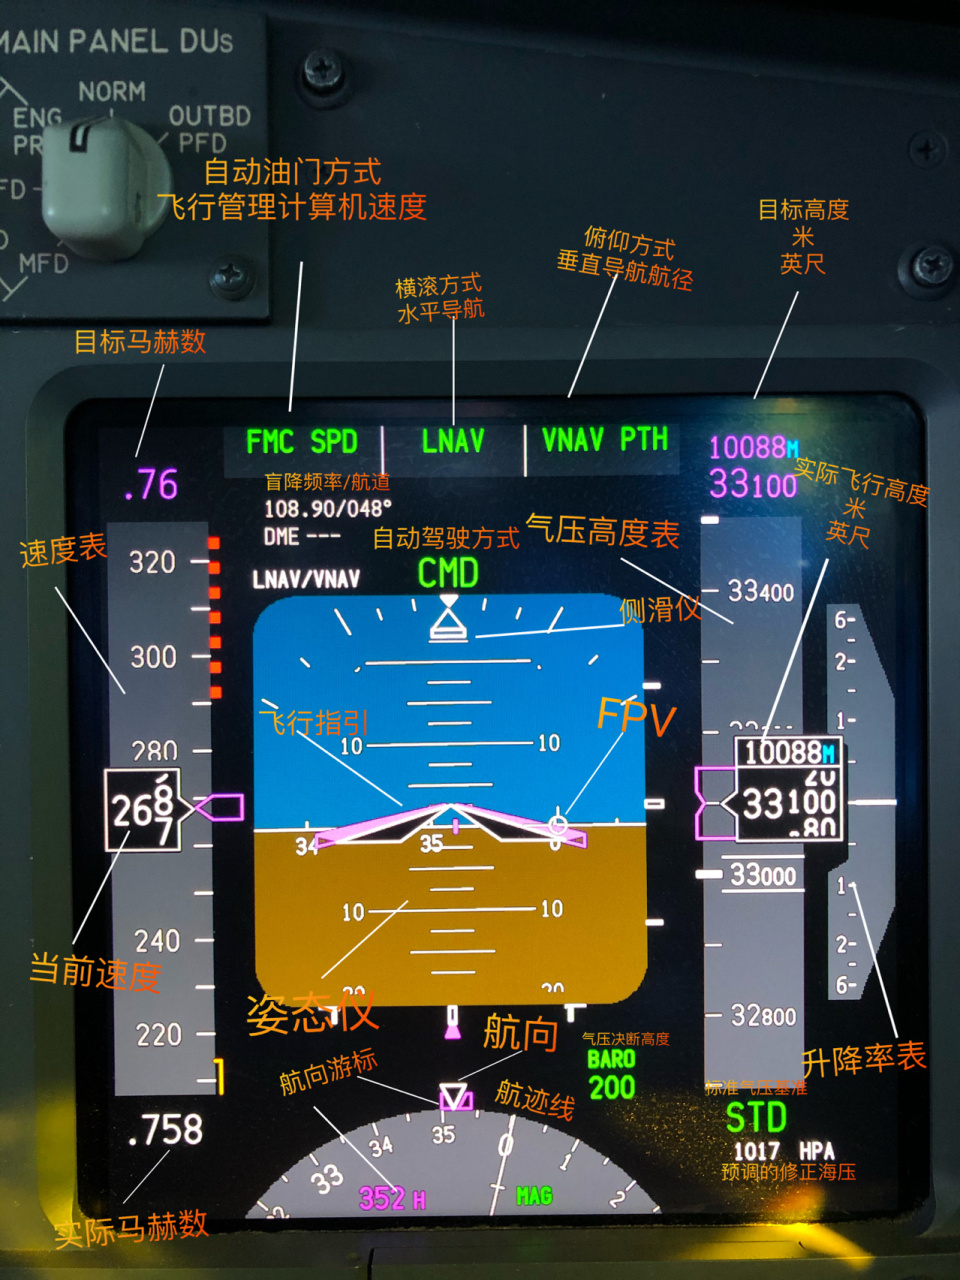 两张图教你看飞机仪表 图一是b737的主飞行显示 图二是b737的导航显示